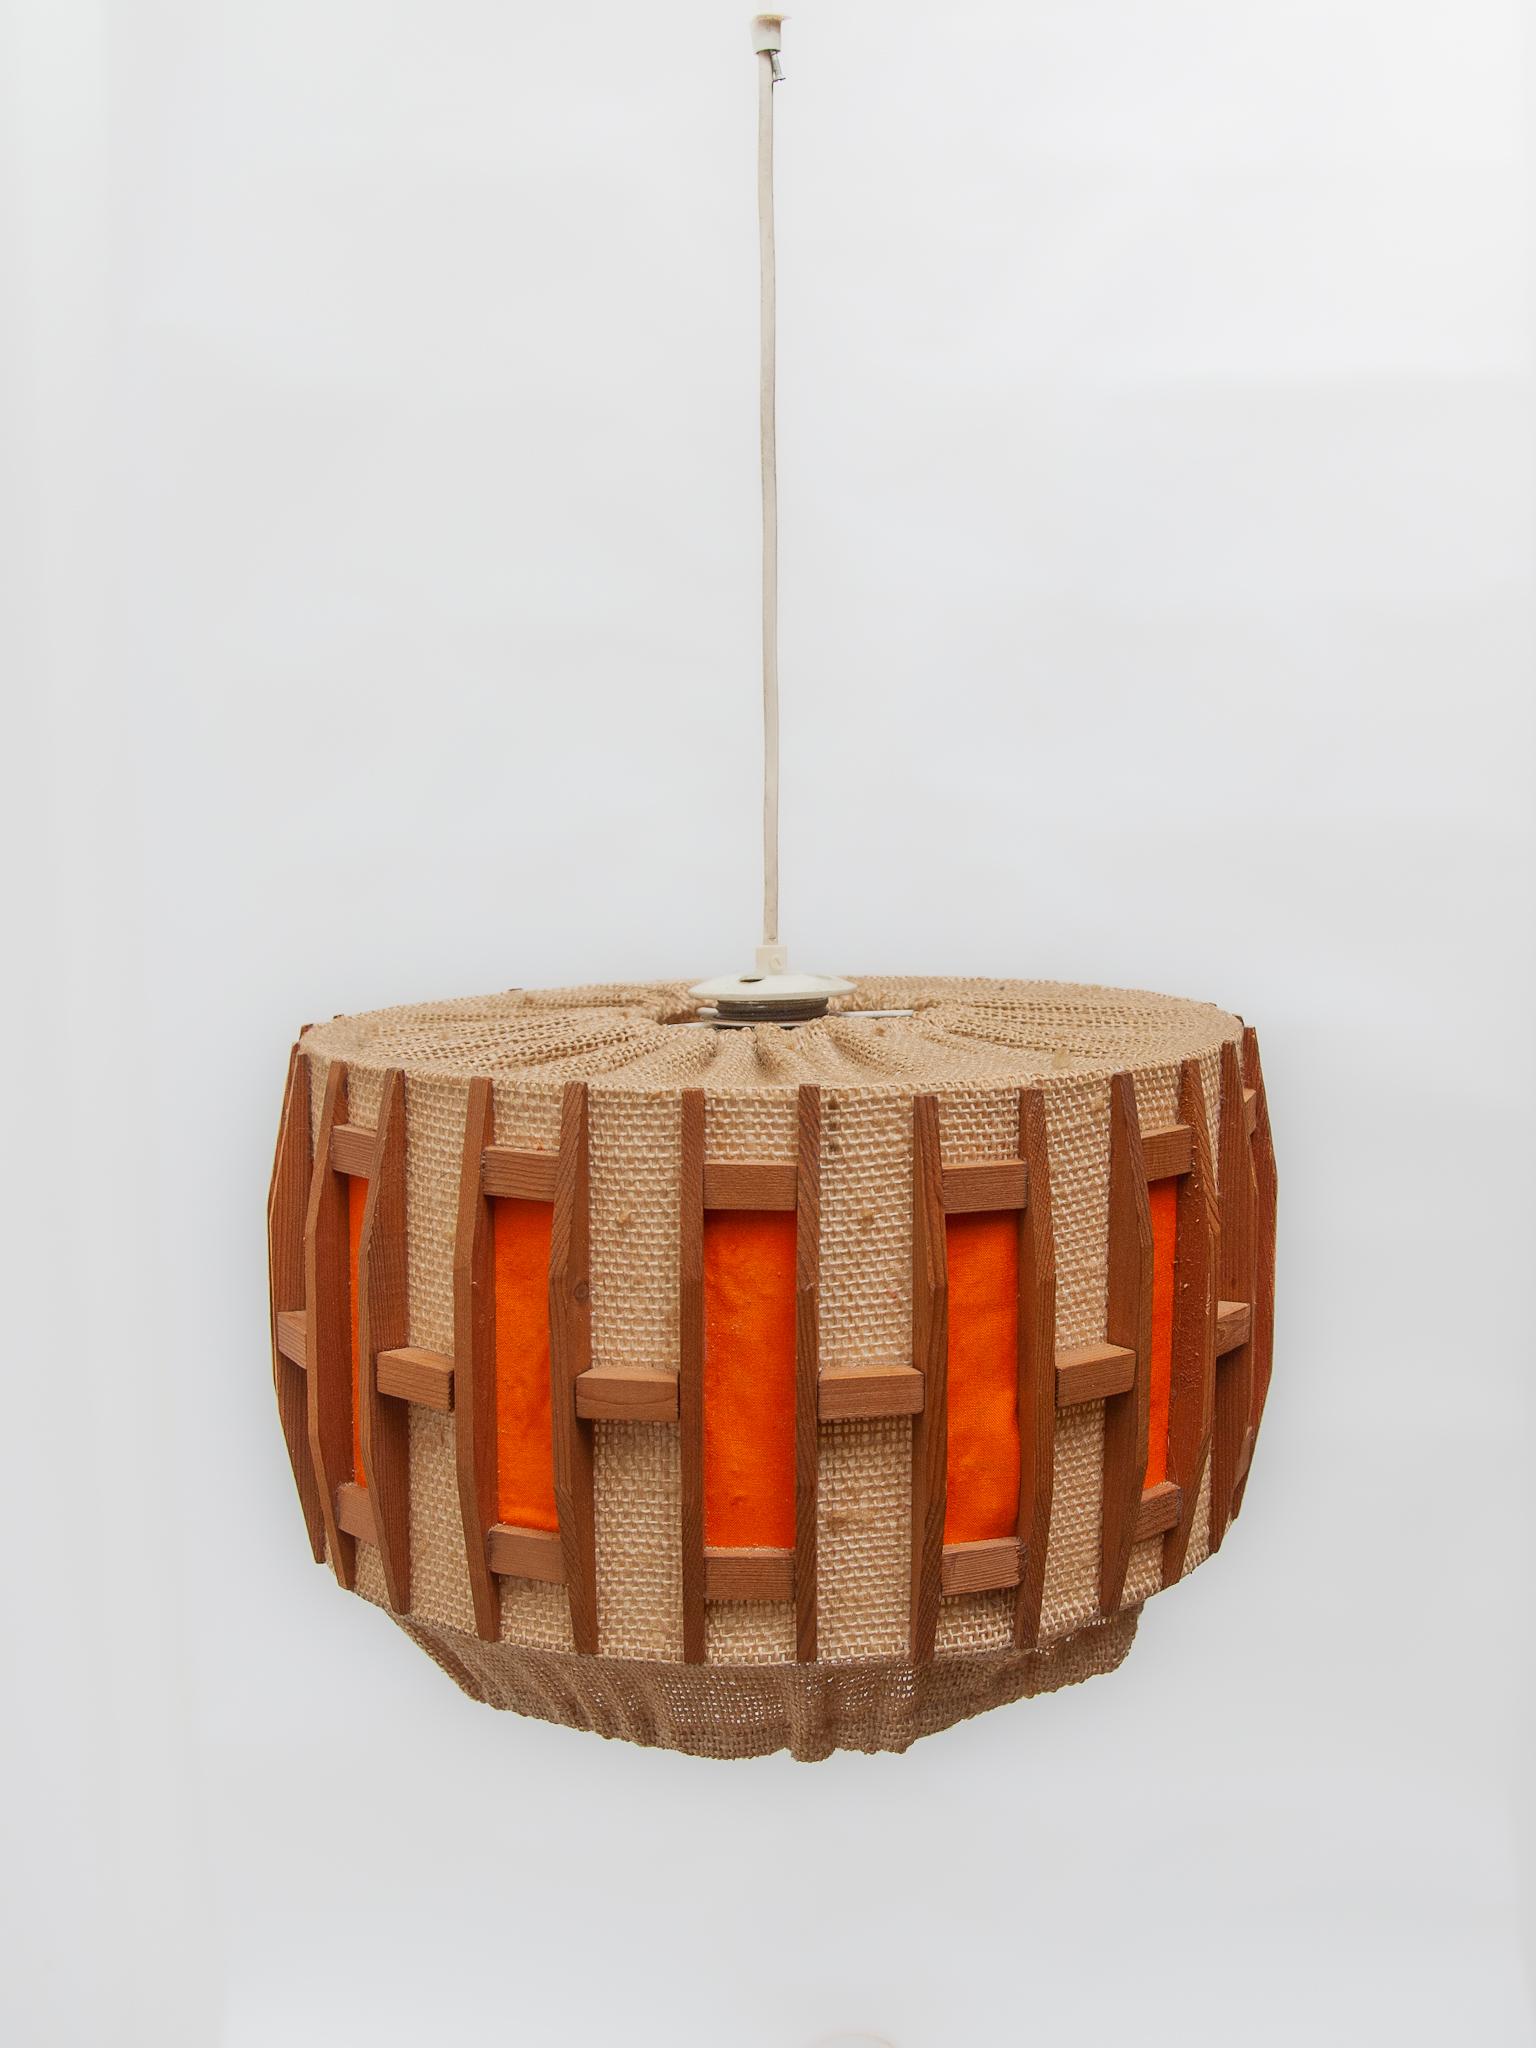 Belgian Orange Midcentury Belgium Design in Teak and Jute Pendant Lamp, 1960s For Sale